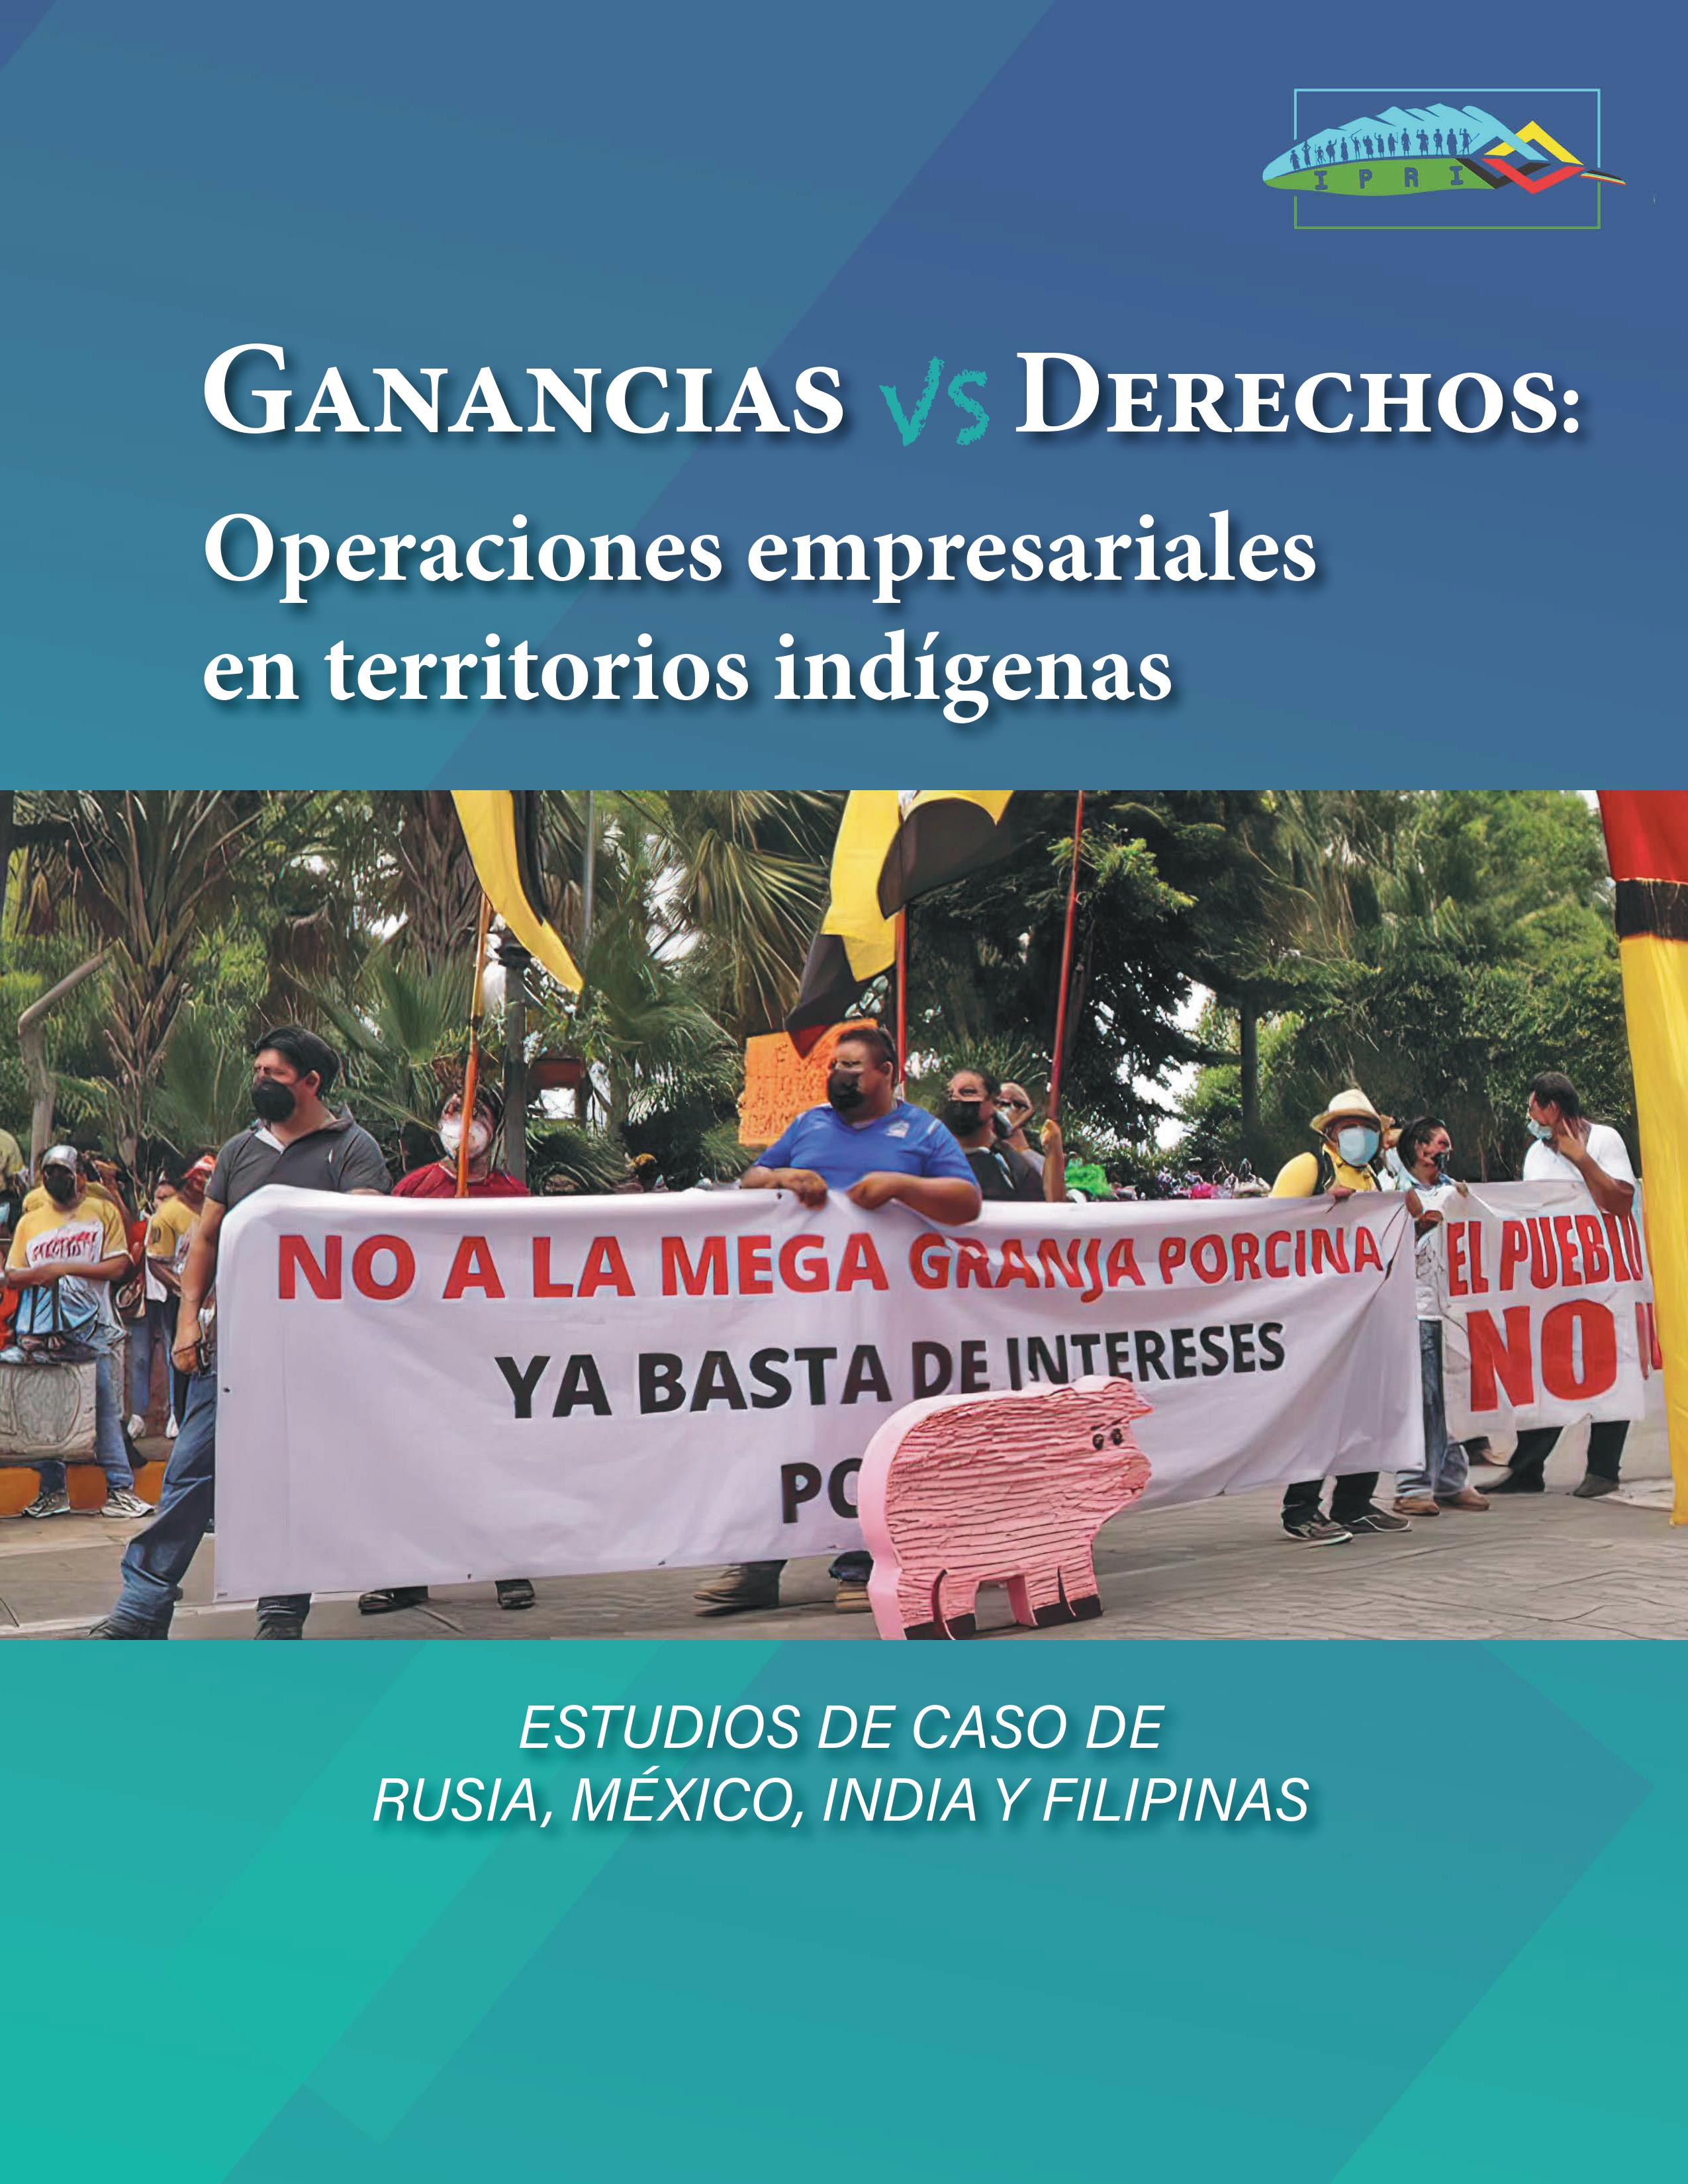 Ganancias vs Derechos - Operaciones empresariales en territorios indígenas